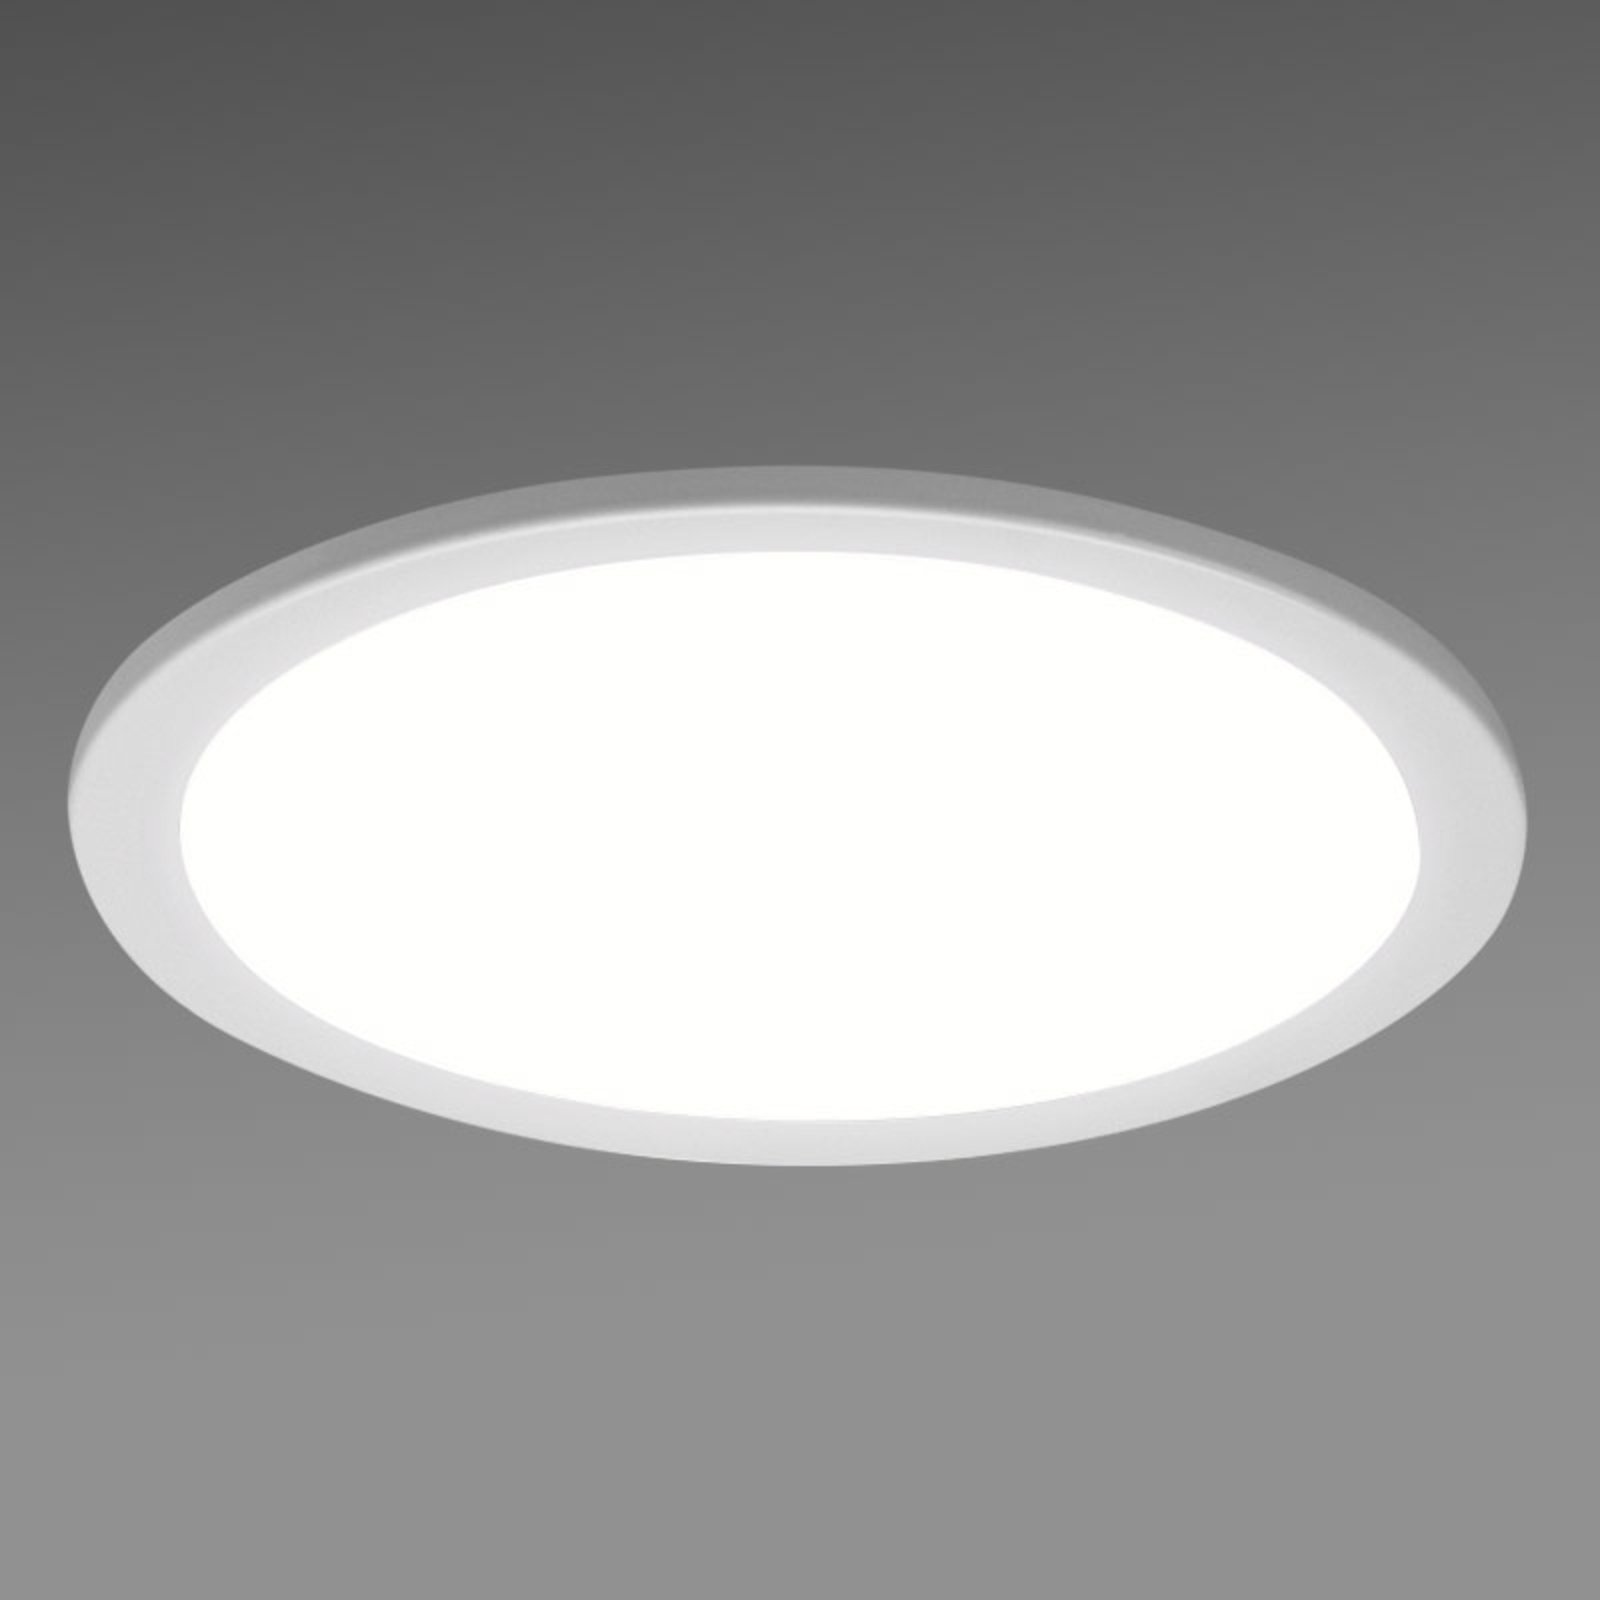 Apvalus LED įleidžiamas šviestuvas SBLG, 4 000 K